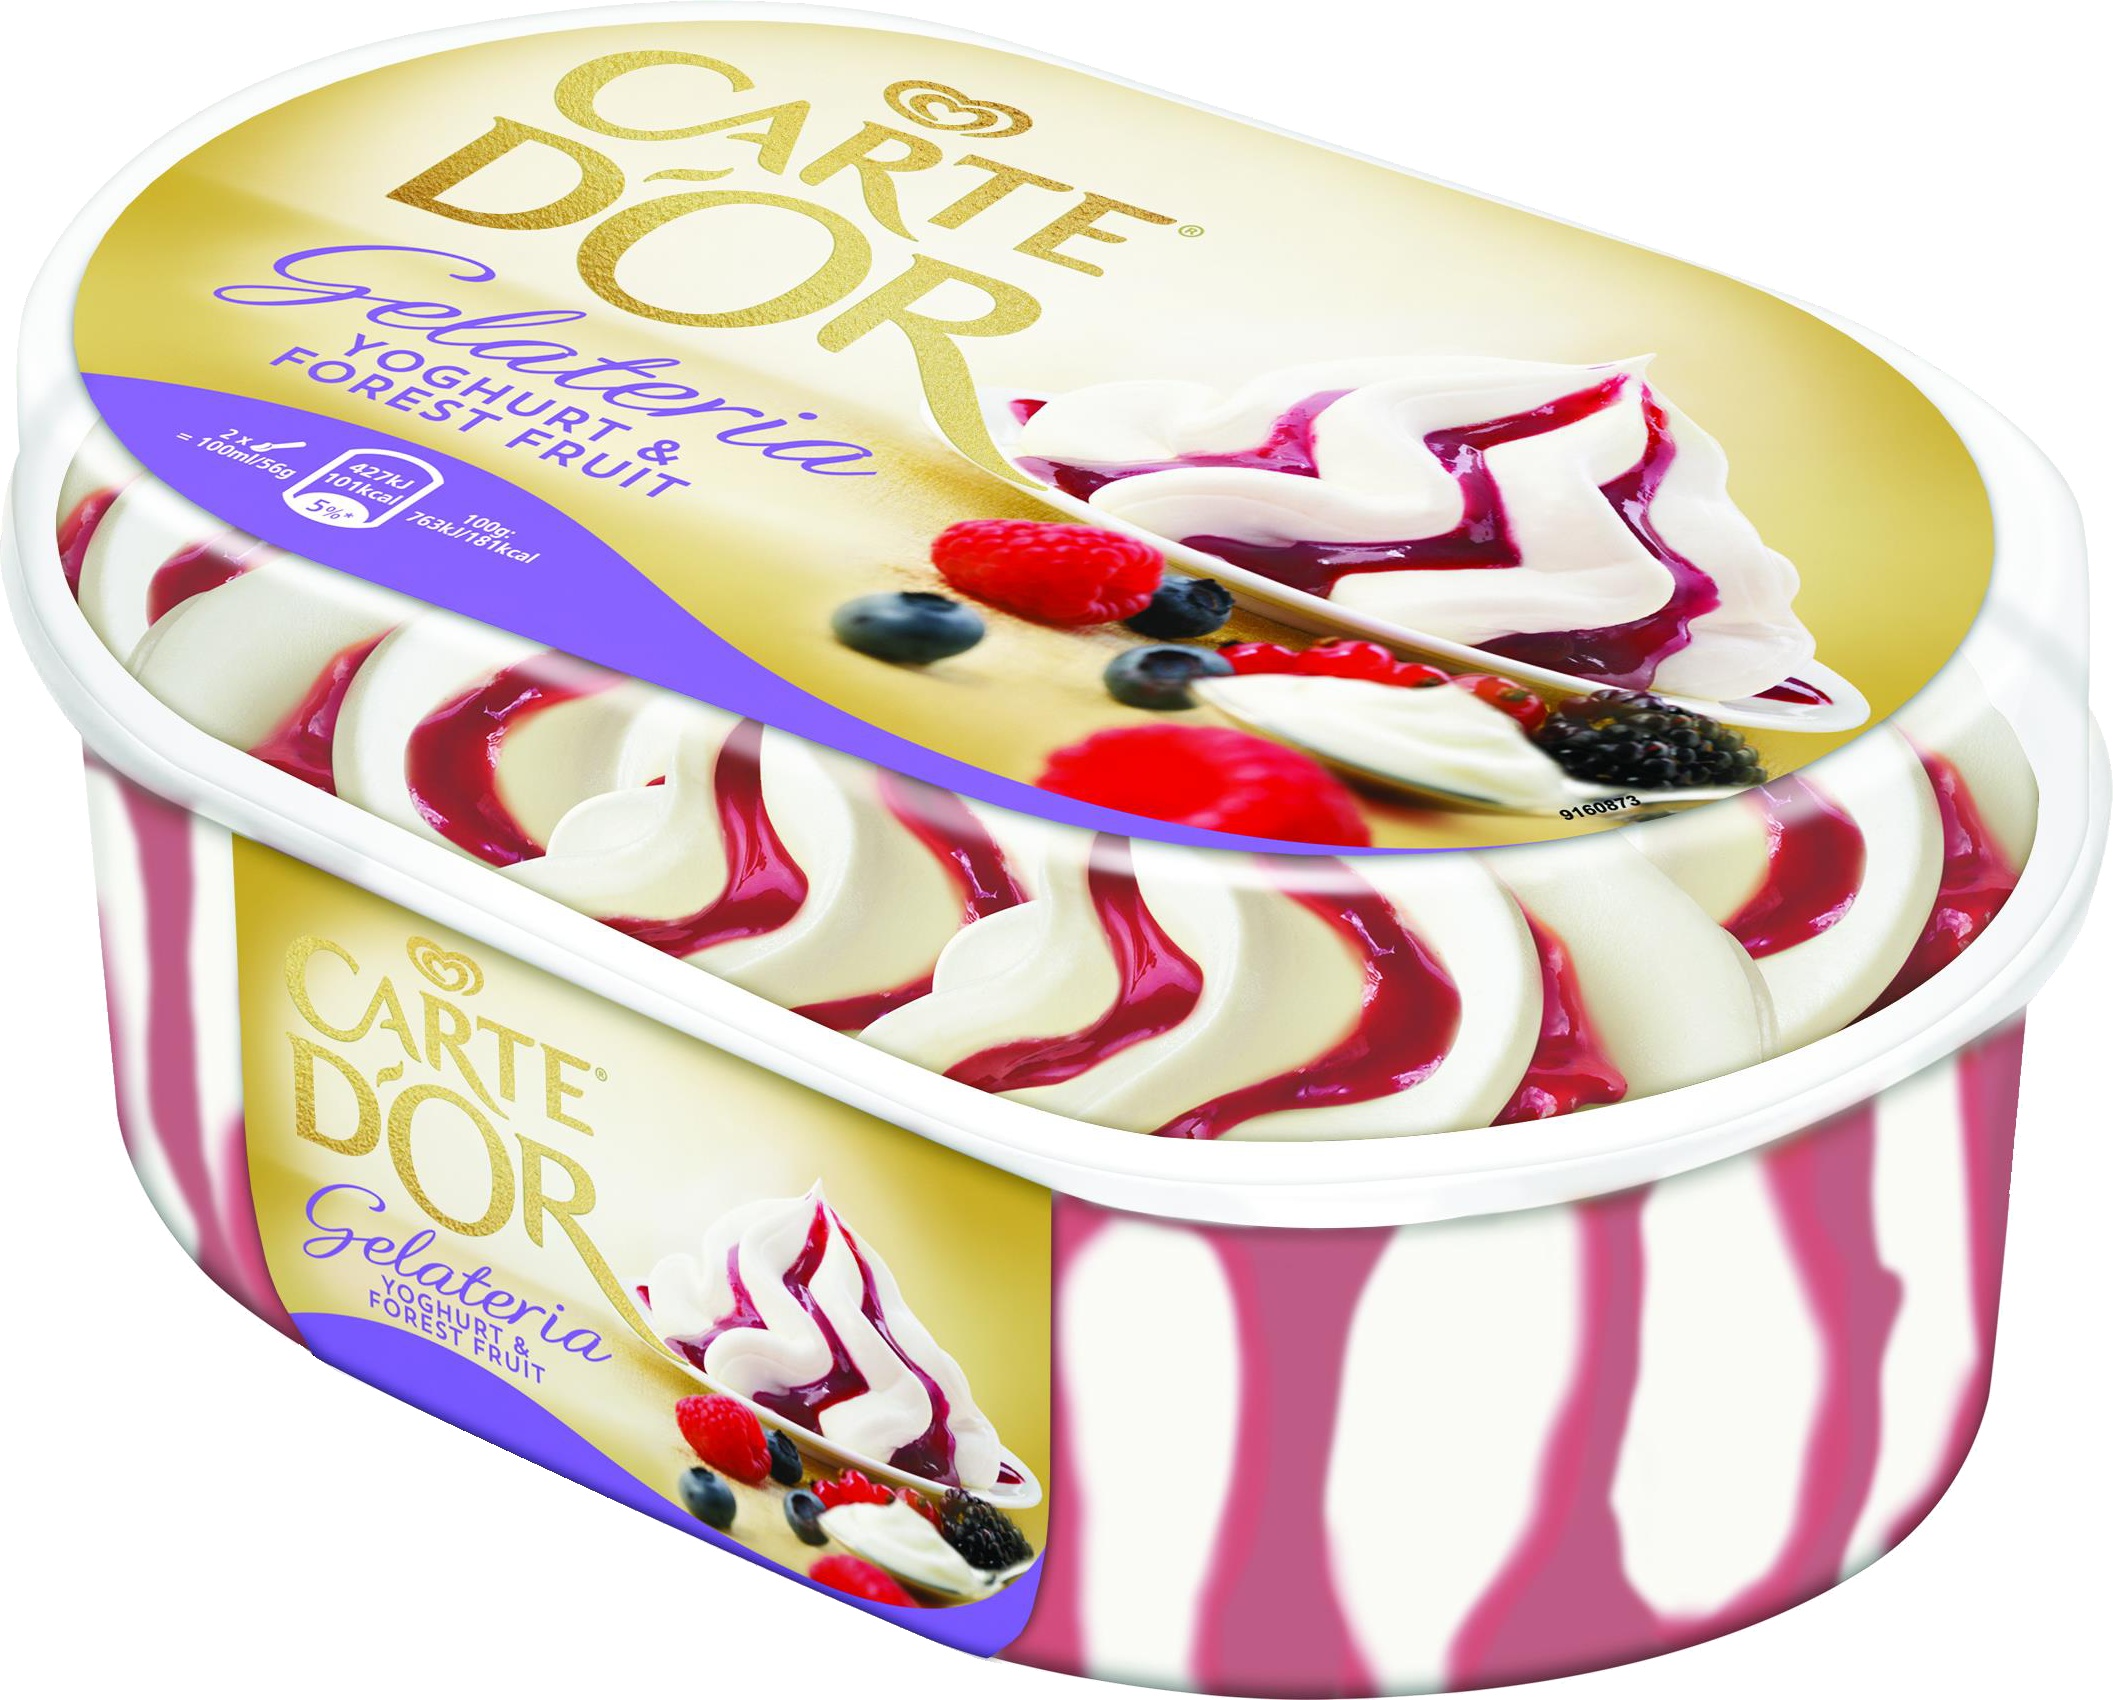 Slika za Sladoled jogurt i šumsko voće Carte D'or 500g